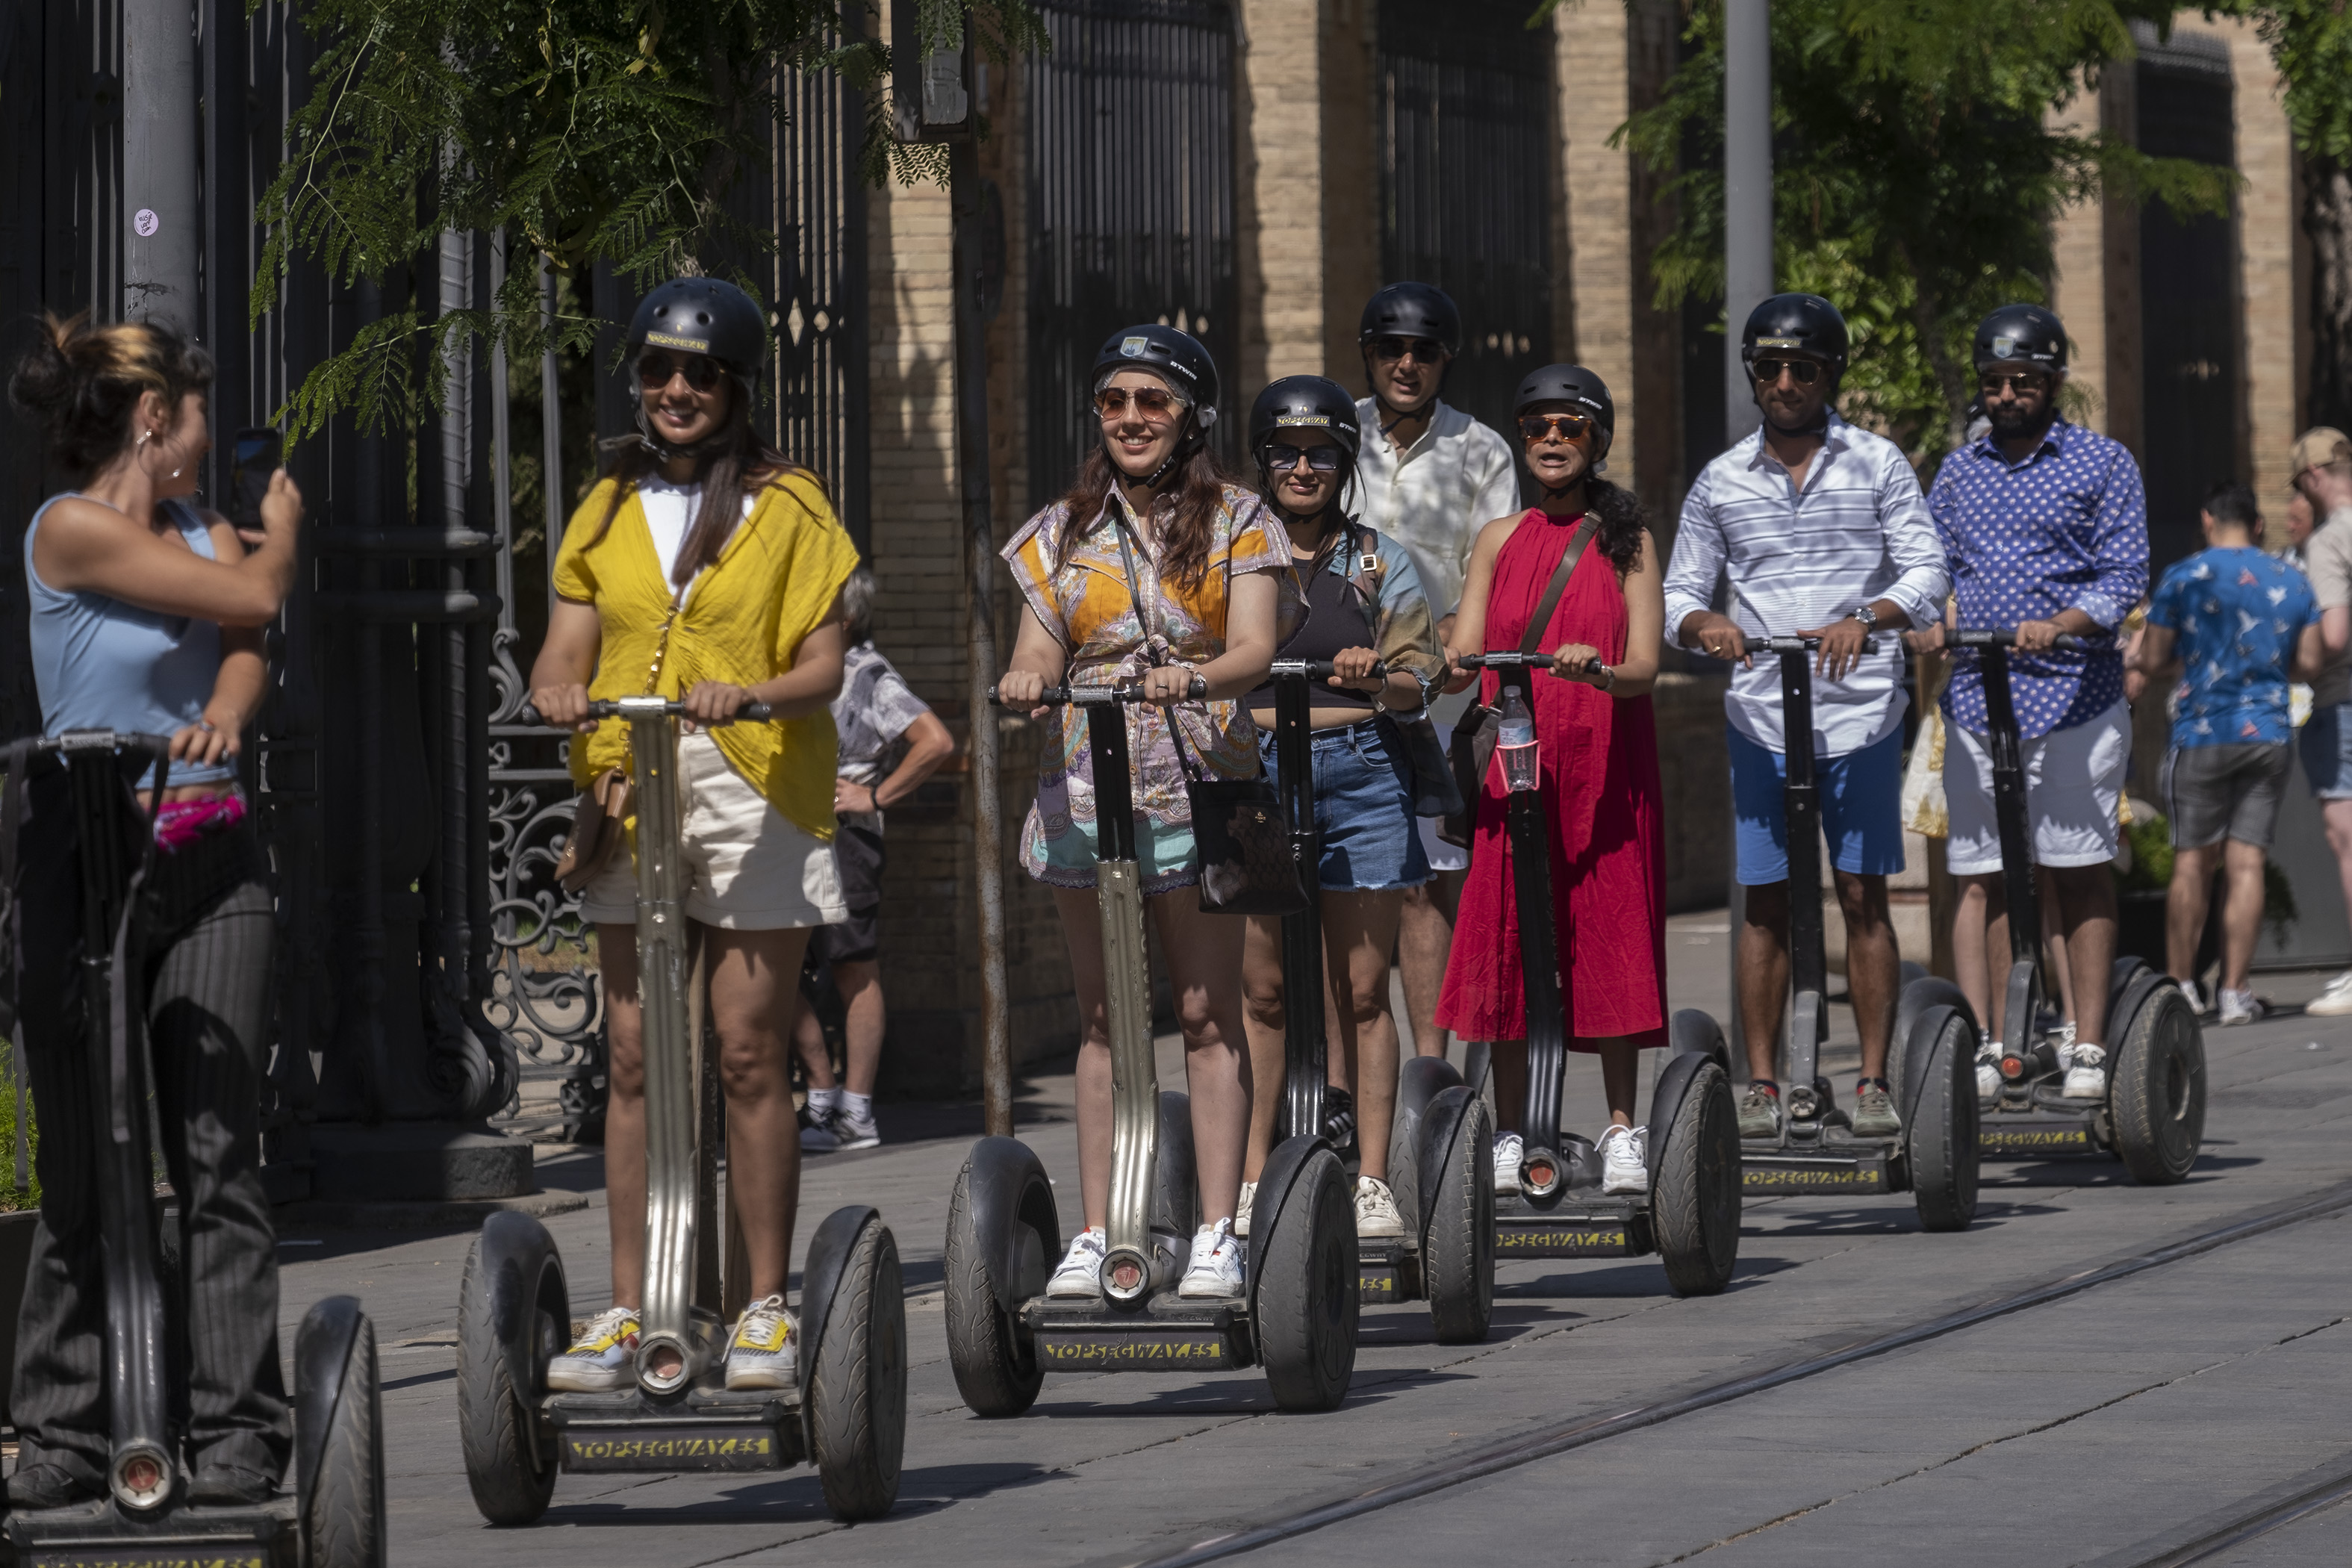 Un grupo de turistas el pasado 11 de mayo en Sevilla.